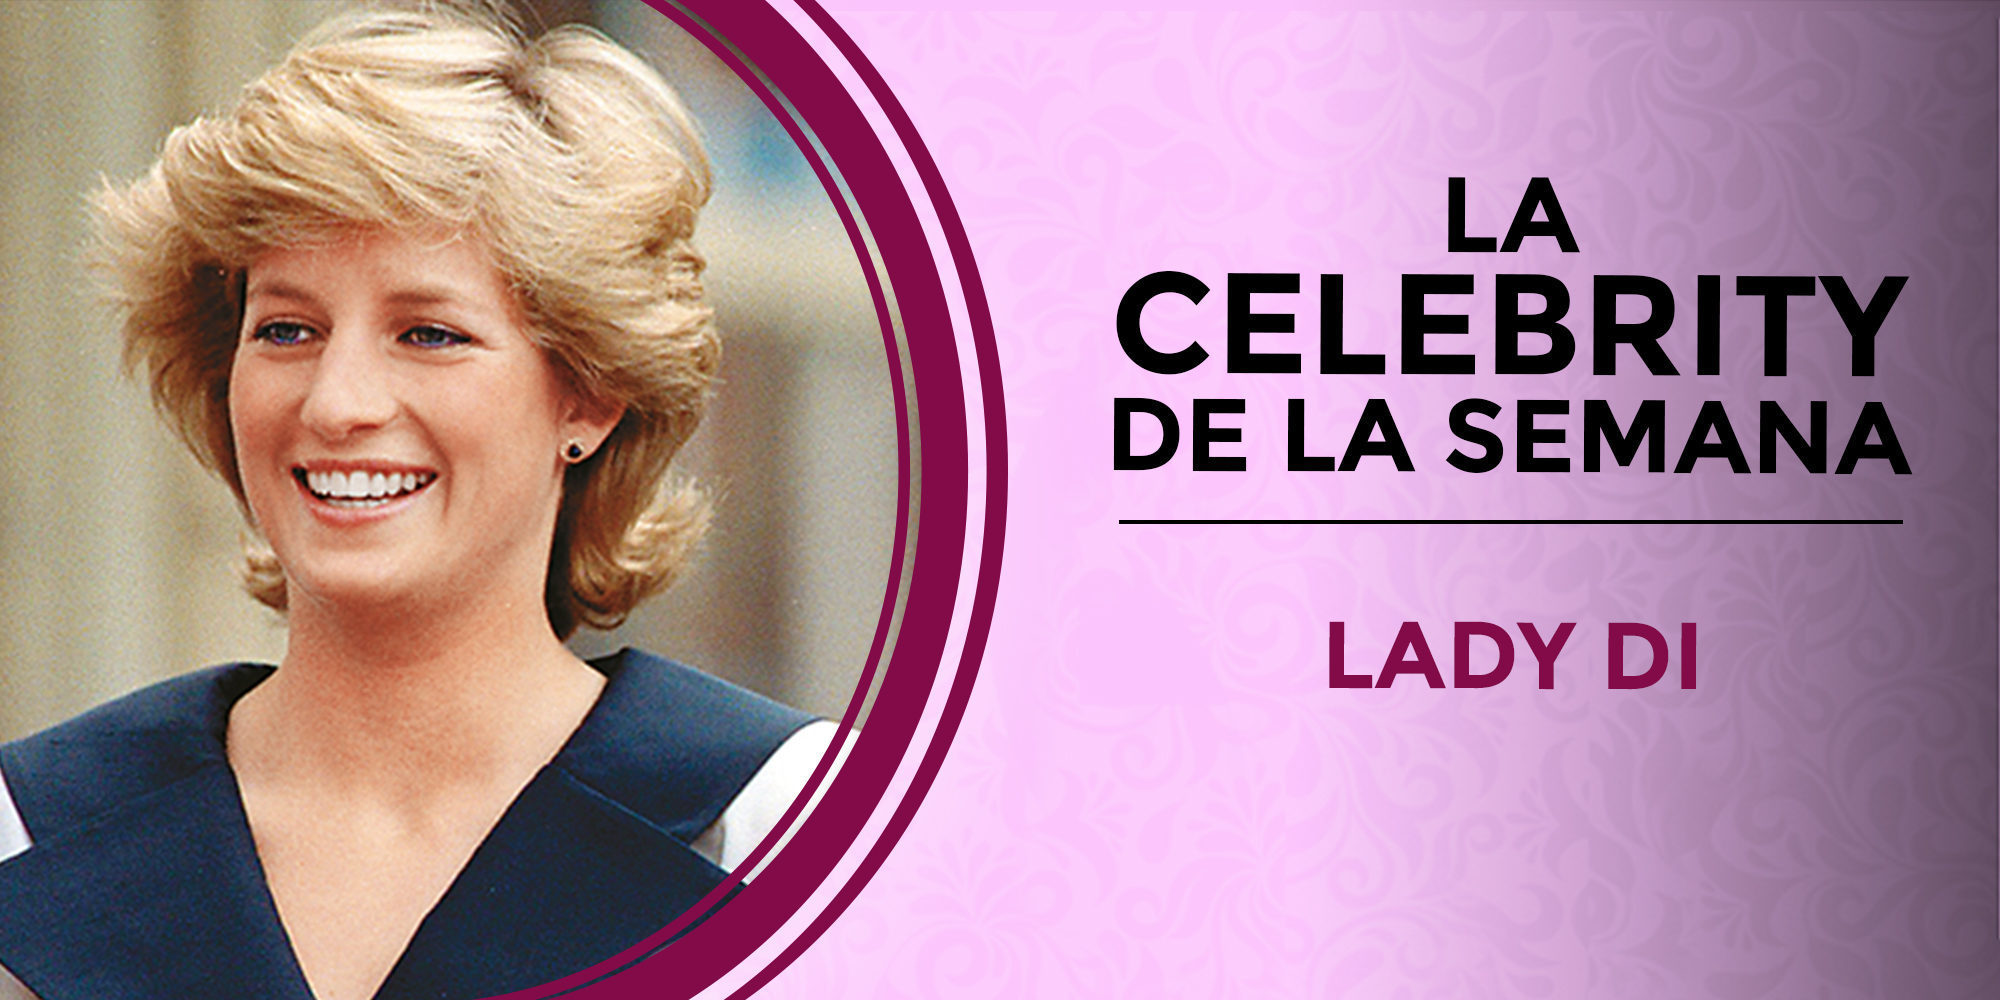 Lady Di, la celebrity de la semana por el 20 aniversario de su muerte